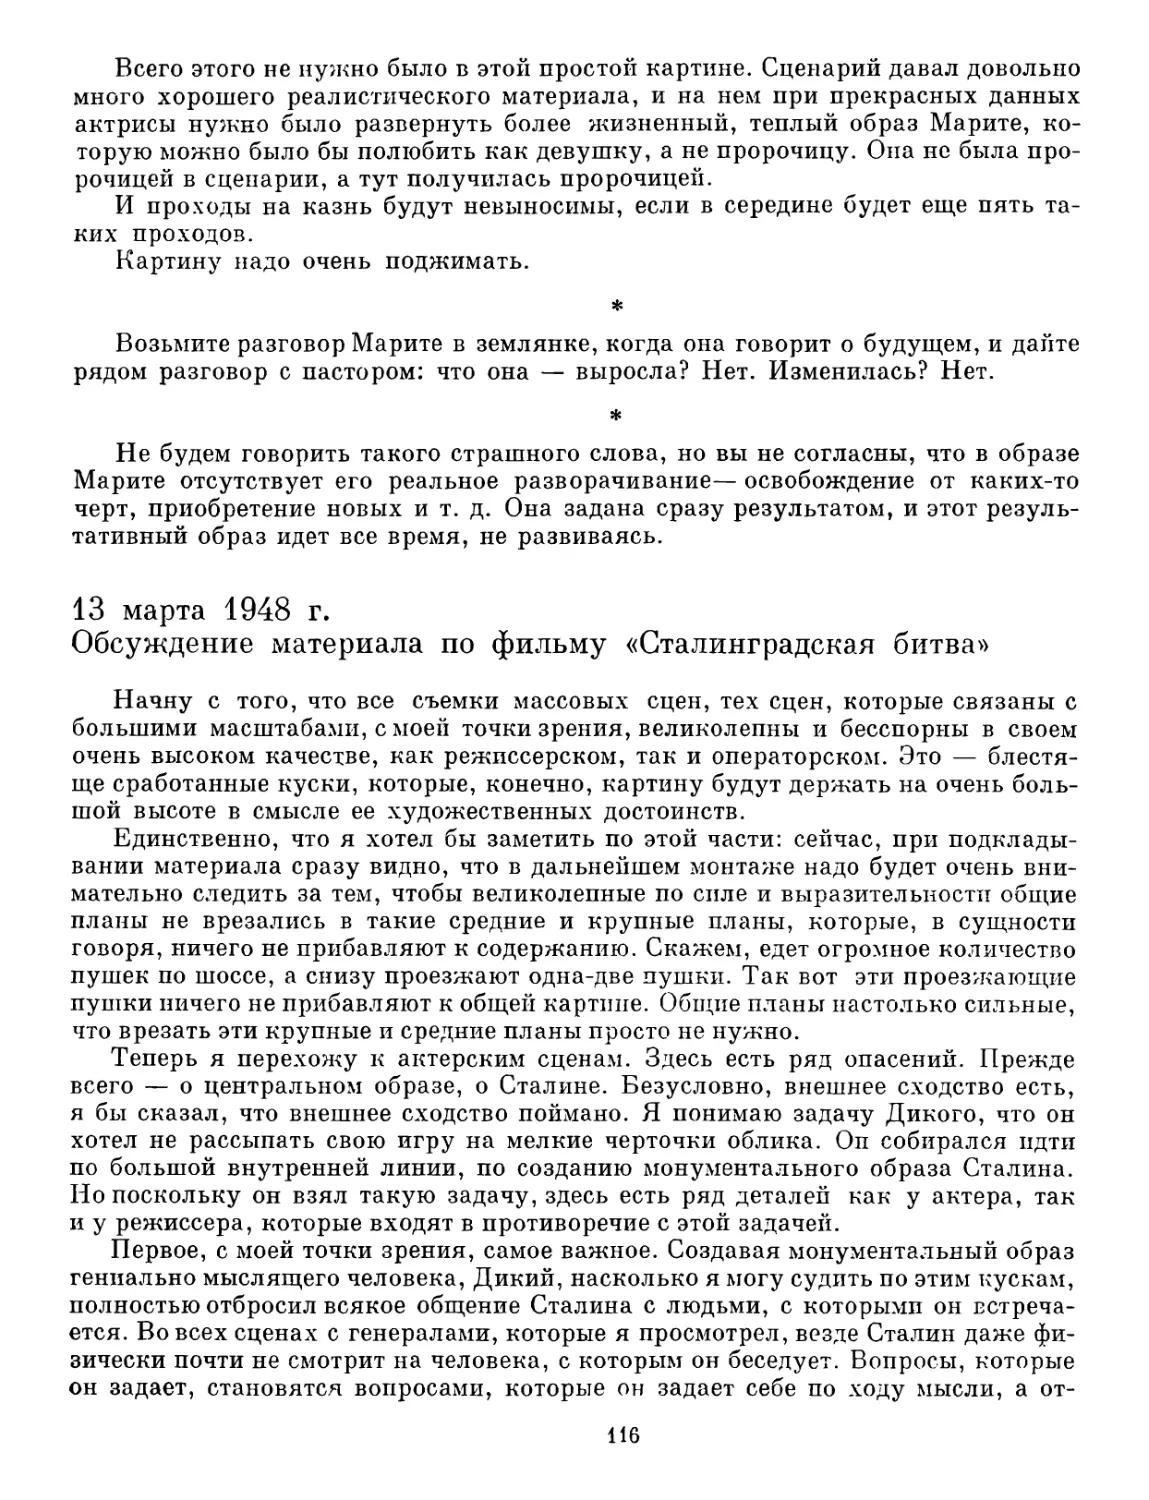 13 марта 1948 г. Обсуждение материала по фильму «Сталинградская битва»